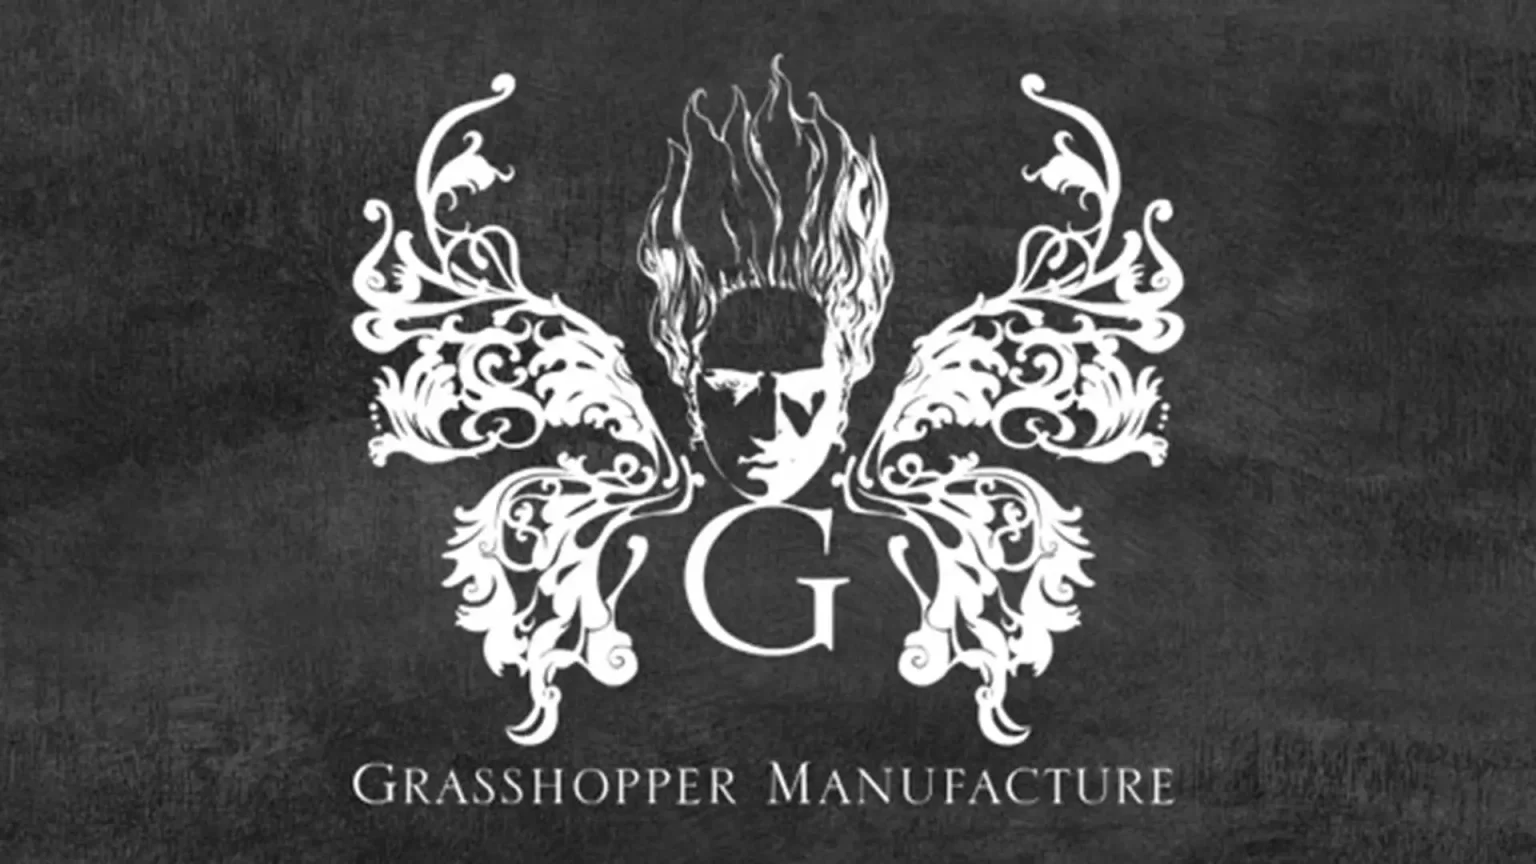 grasshopper manufacture - generacion xbox